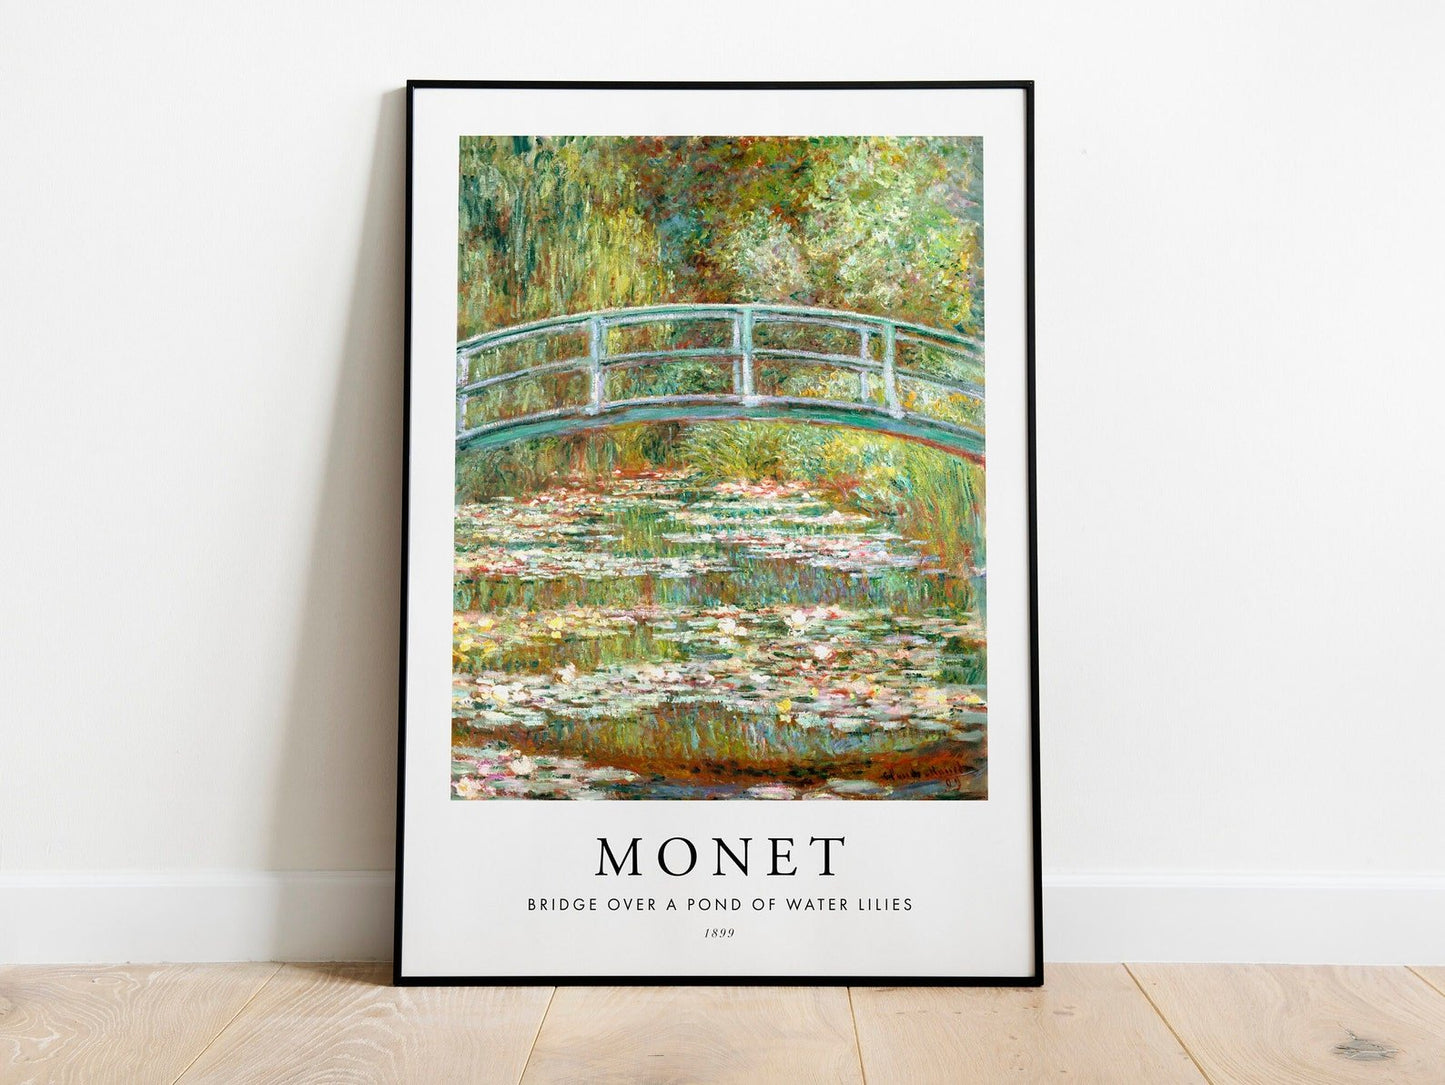 CLAUDE MONET - Pont sur un étang de nénuphars (style affiche)